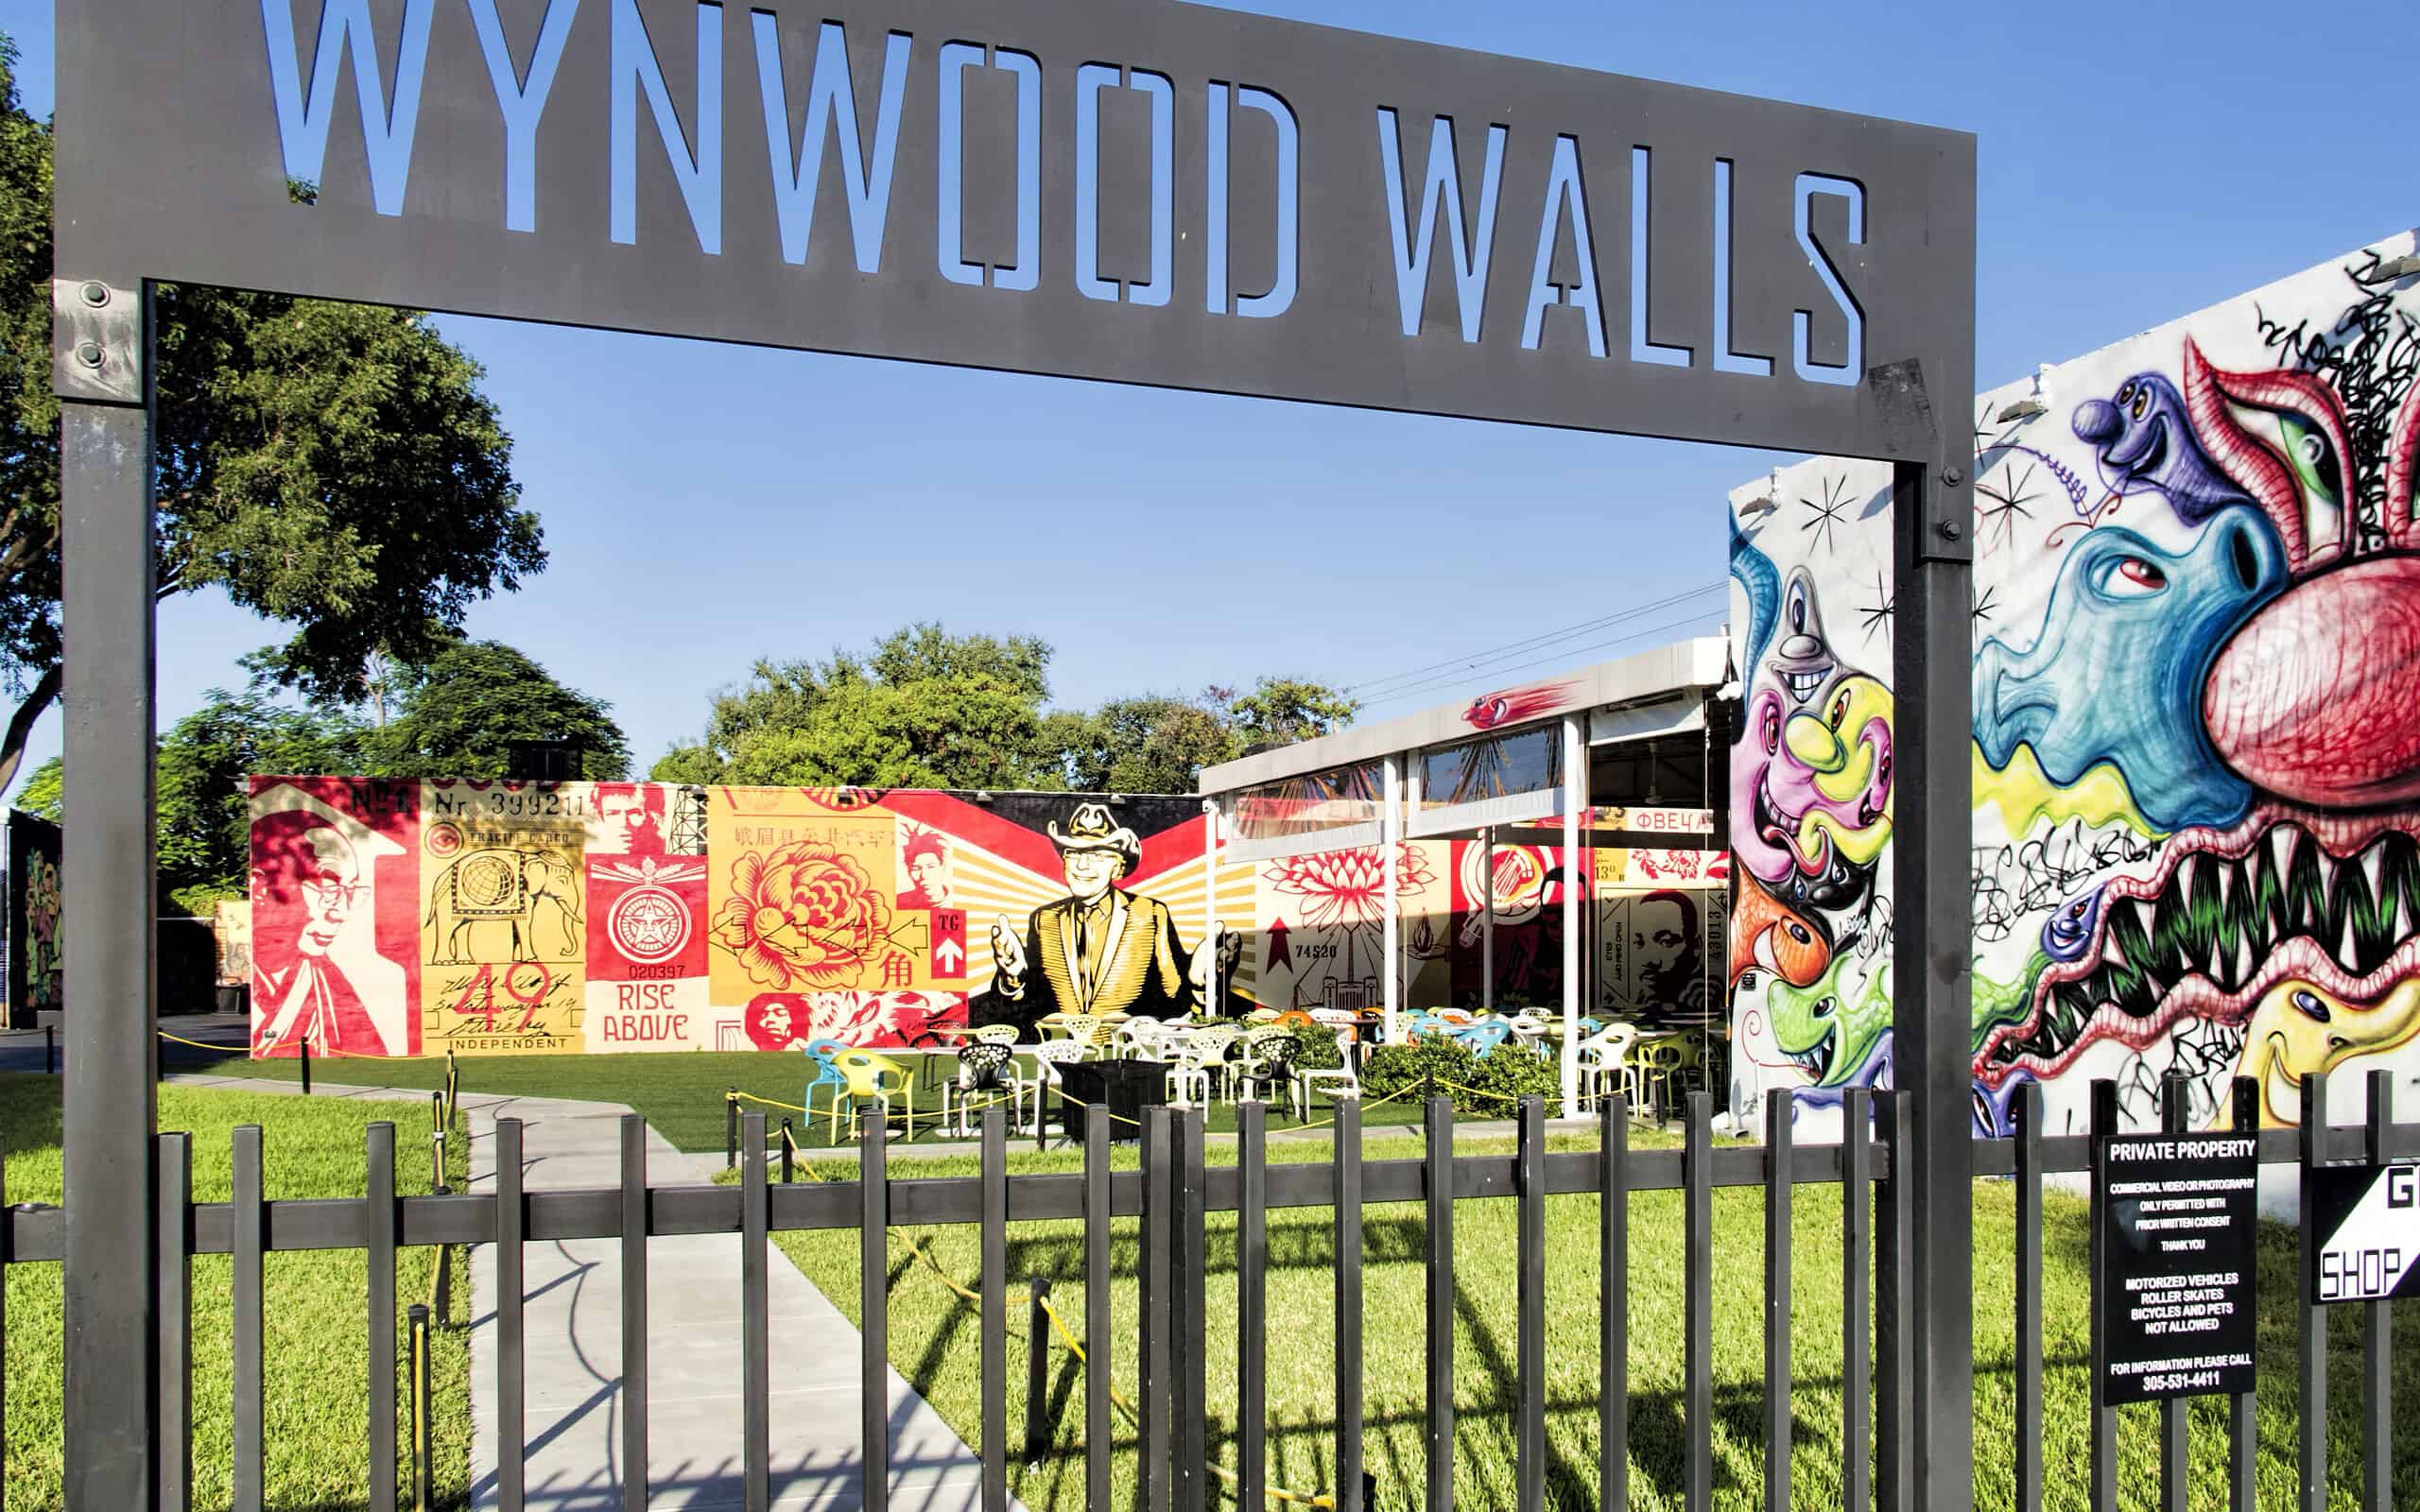 Le Mura Wynwood di Miami.